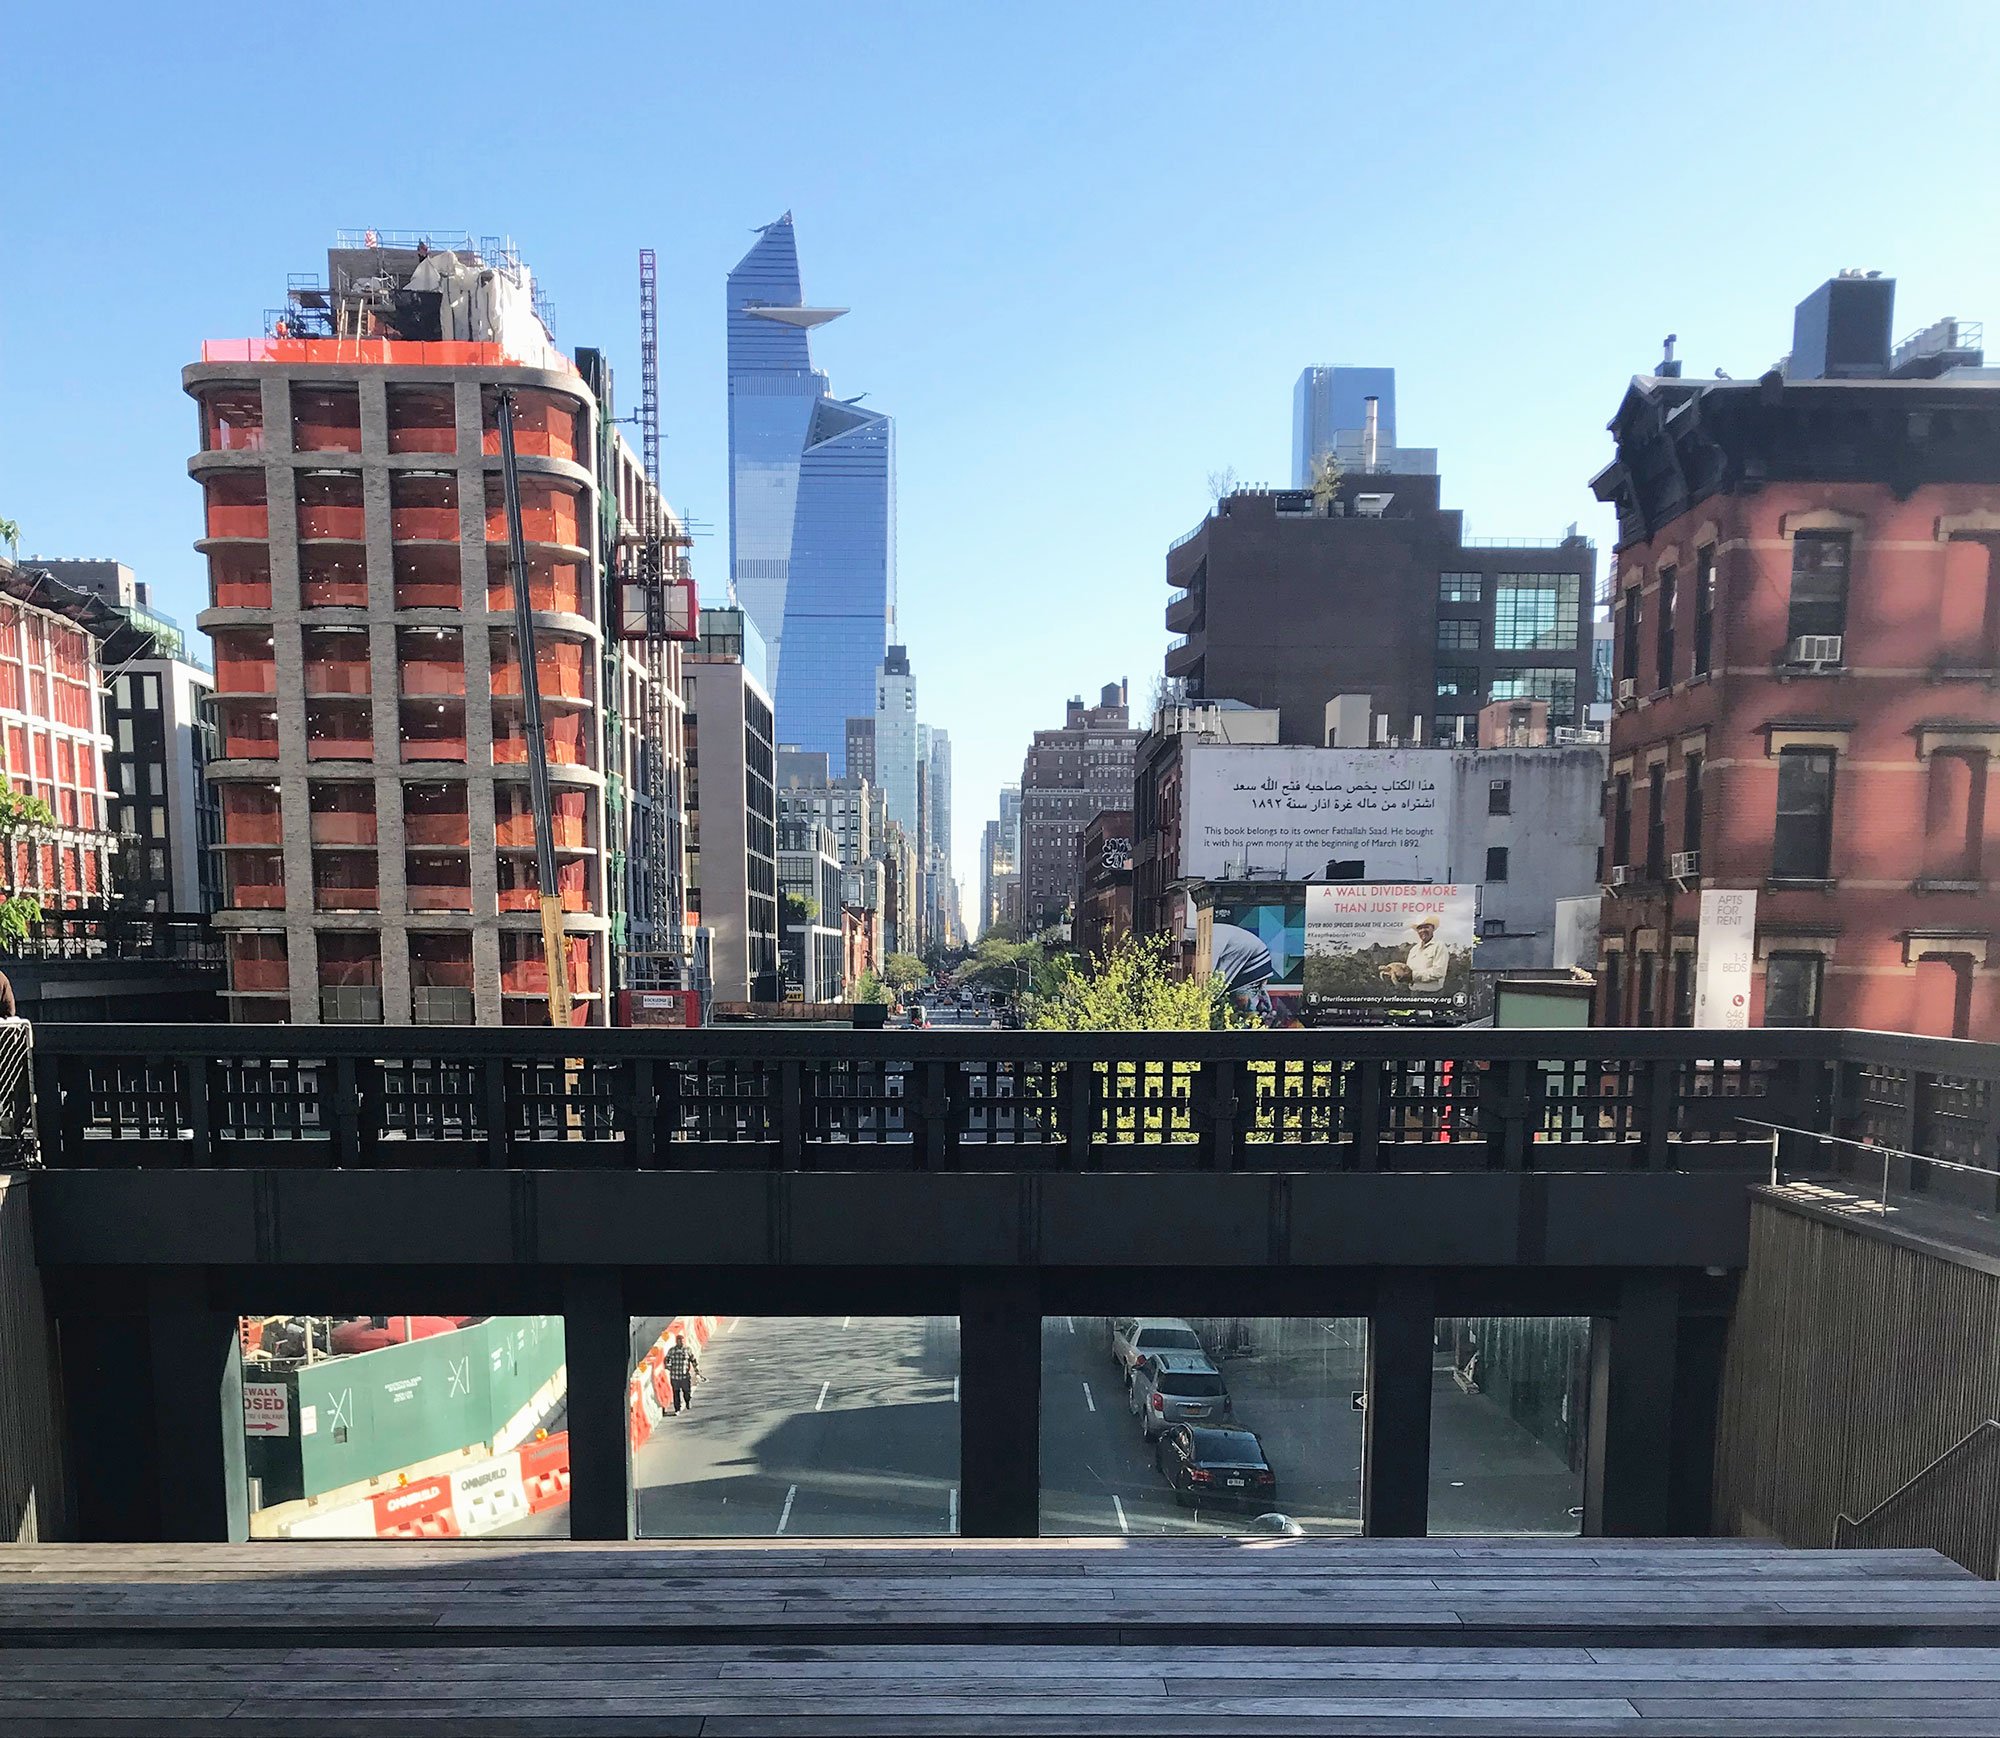 High Line|High Line|High Line|High Line|high line|high line|high line